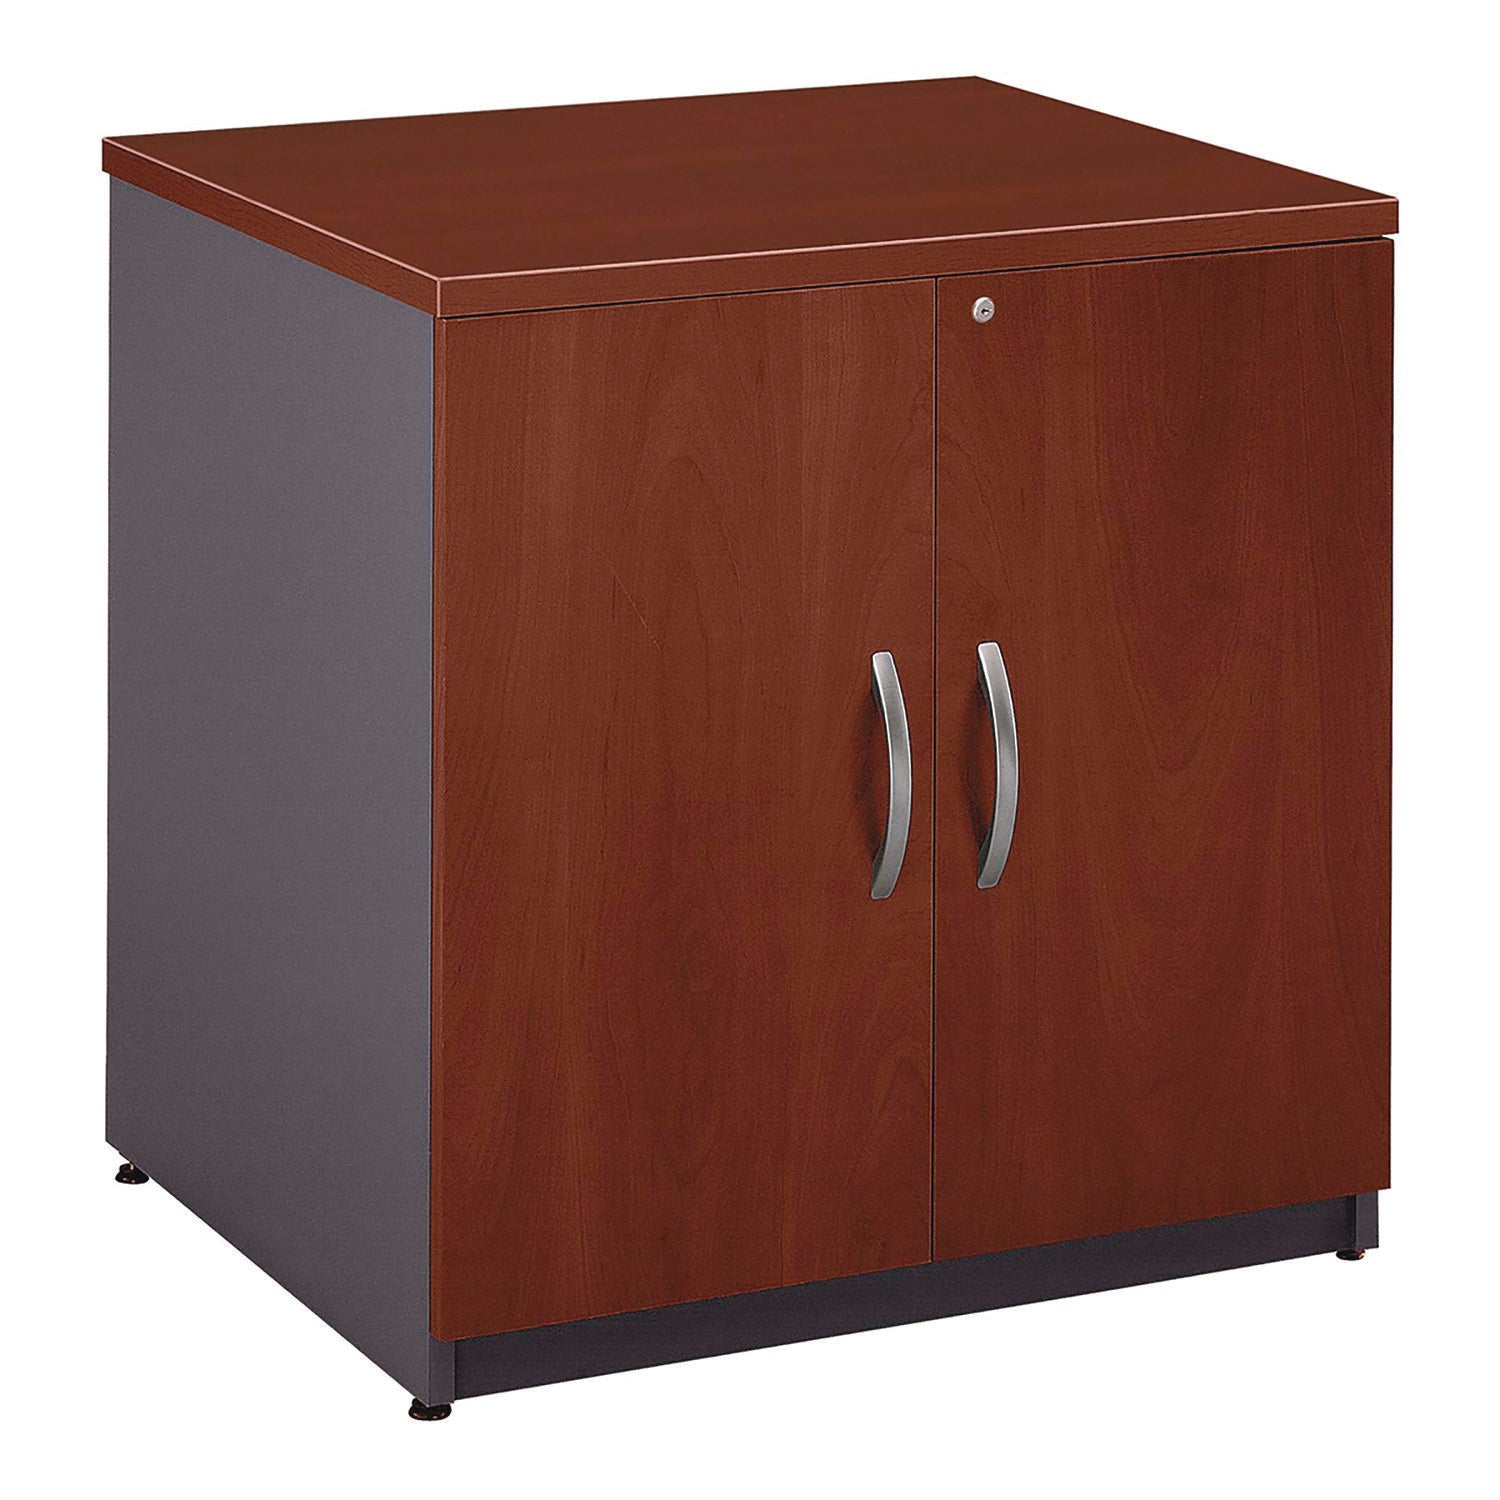 series-c-collection-30w-storage-cabinet-graphite-gray-hansen-cherry_bshwc24496a - 1